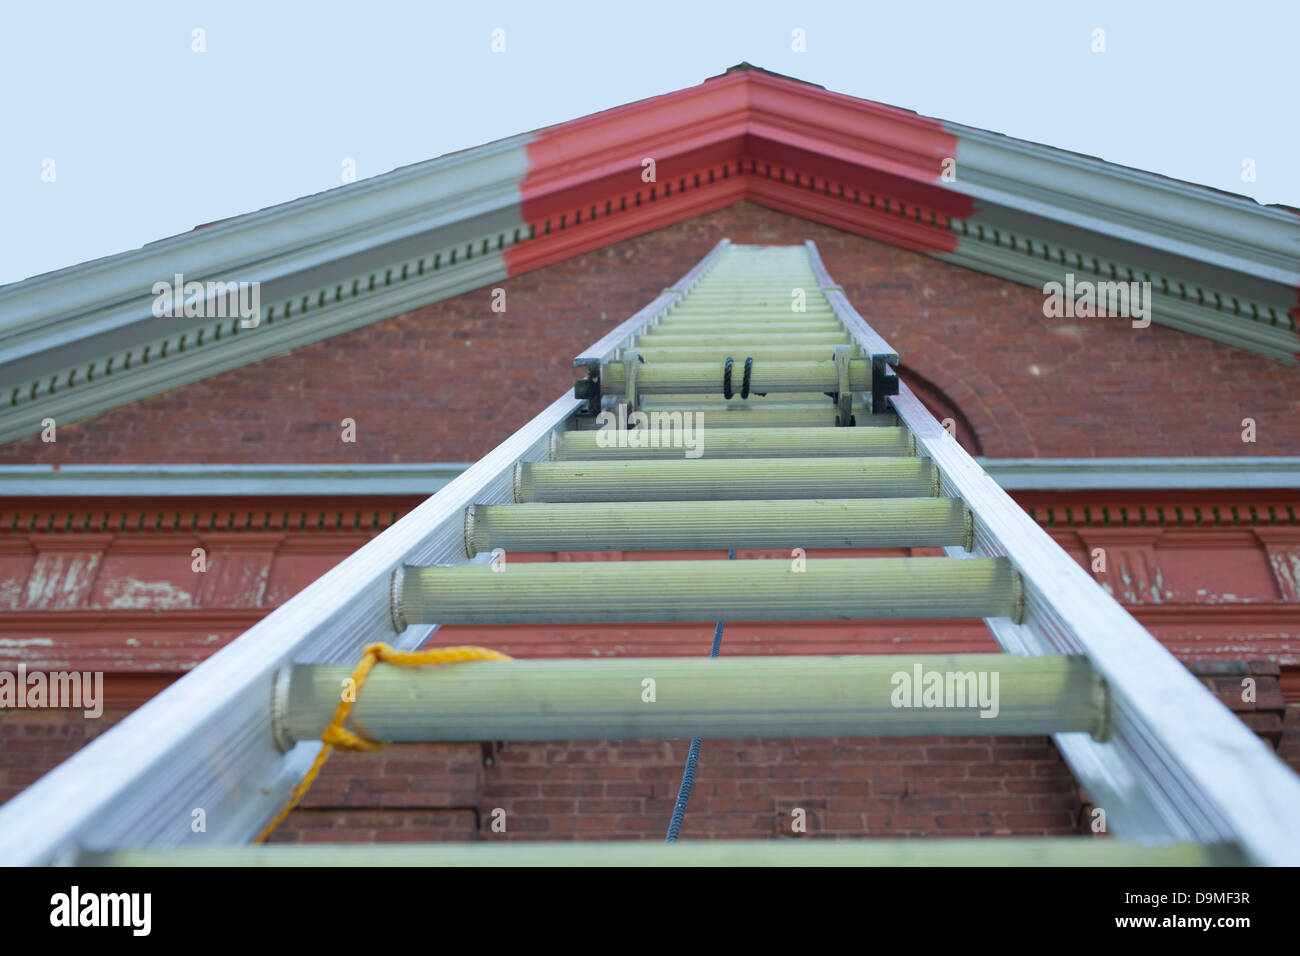 Eine sehr große Aluminium-Schiebeleiter reicht bis zur Spitze des ehemaligen Schulhaus.  Graue Farbe ist Grundierung und rot ist endgültig. Stockfoto